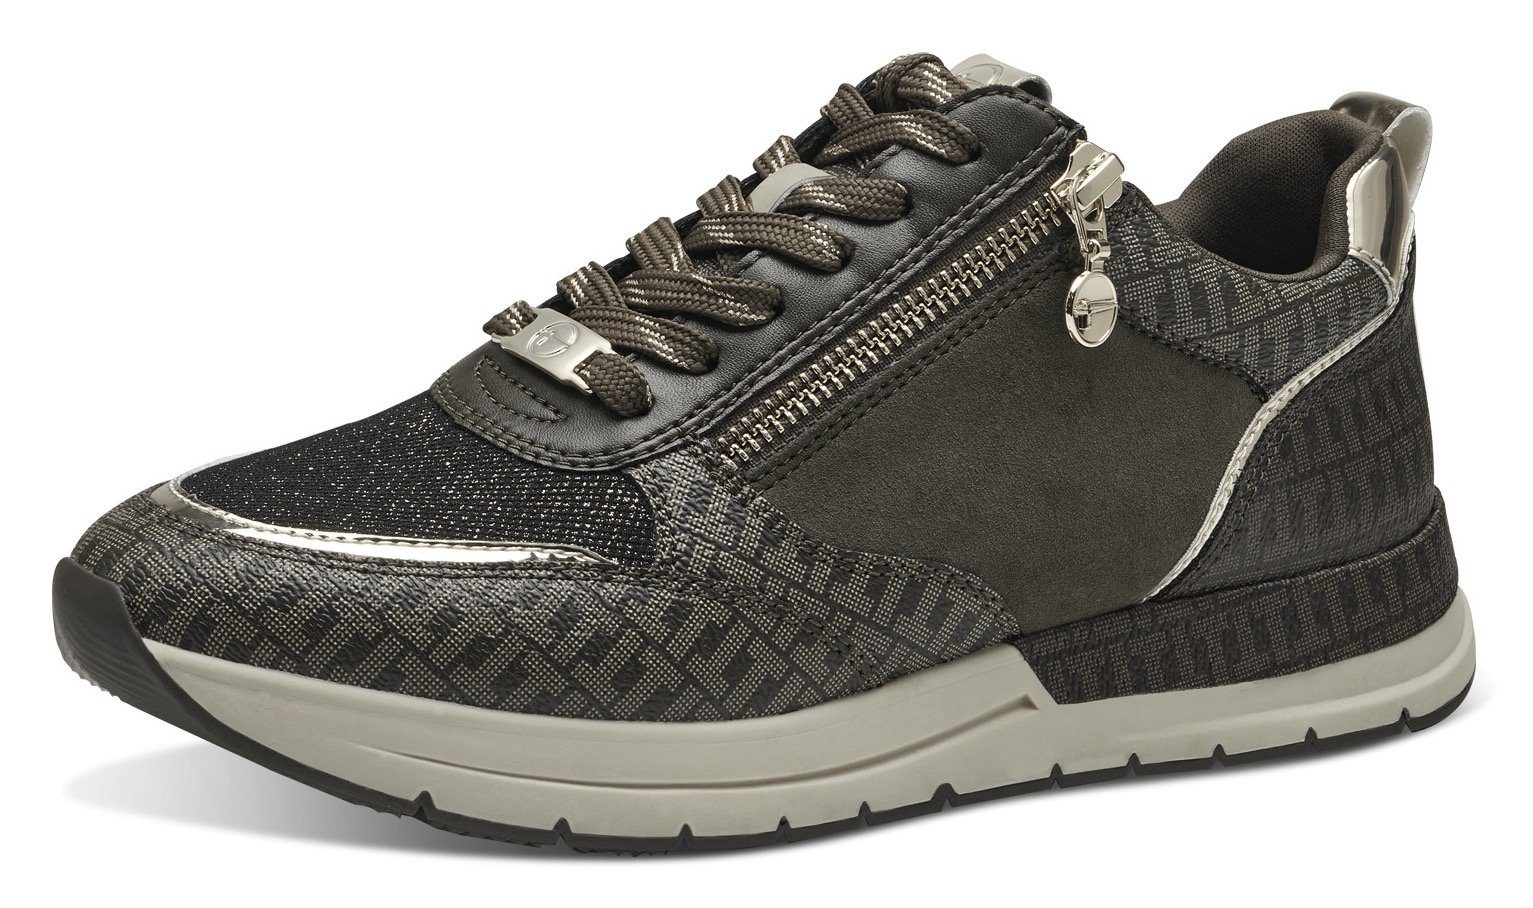 Tamaris Sneaker mit trendigen Metallic-Details olivgrün kombiniert